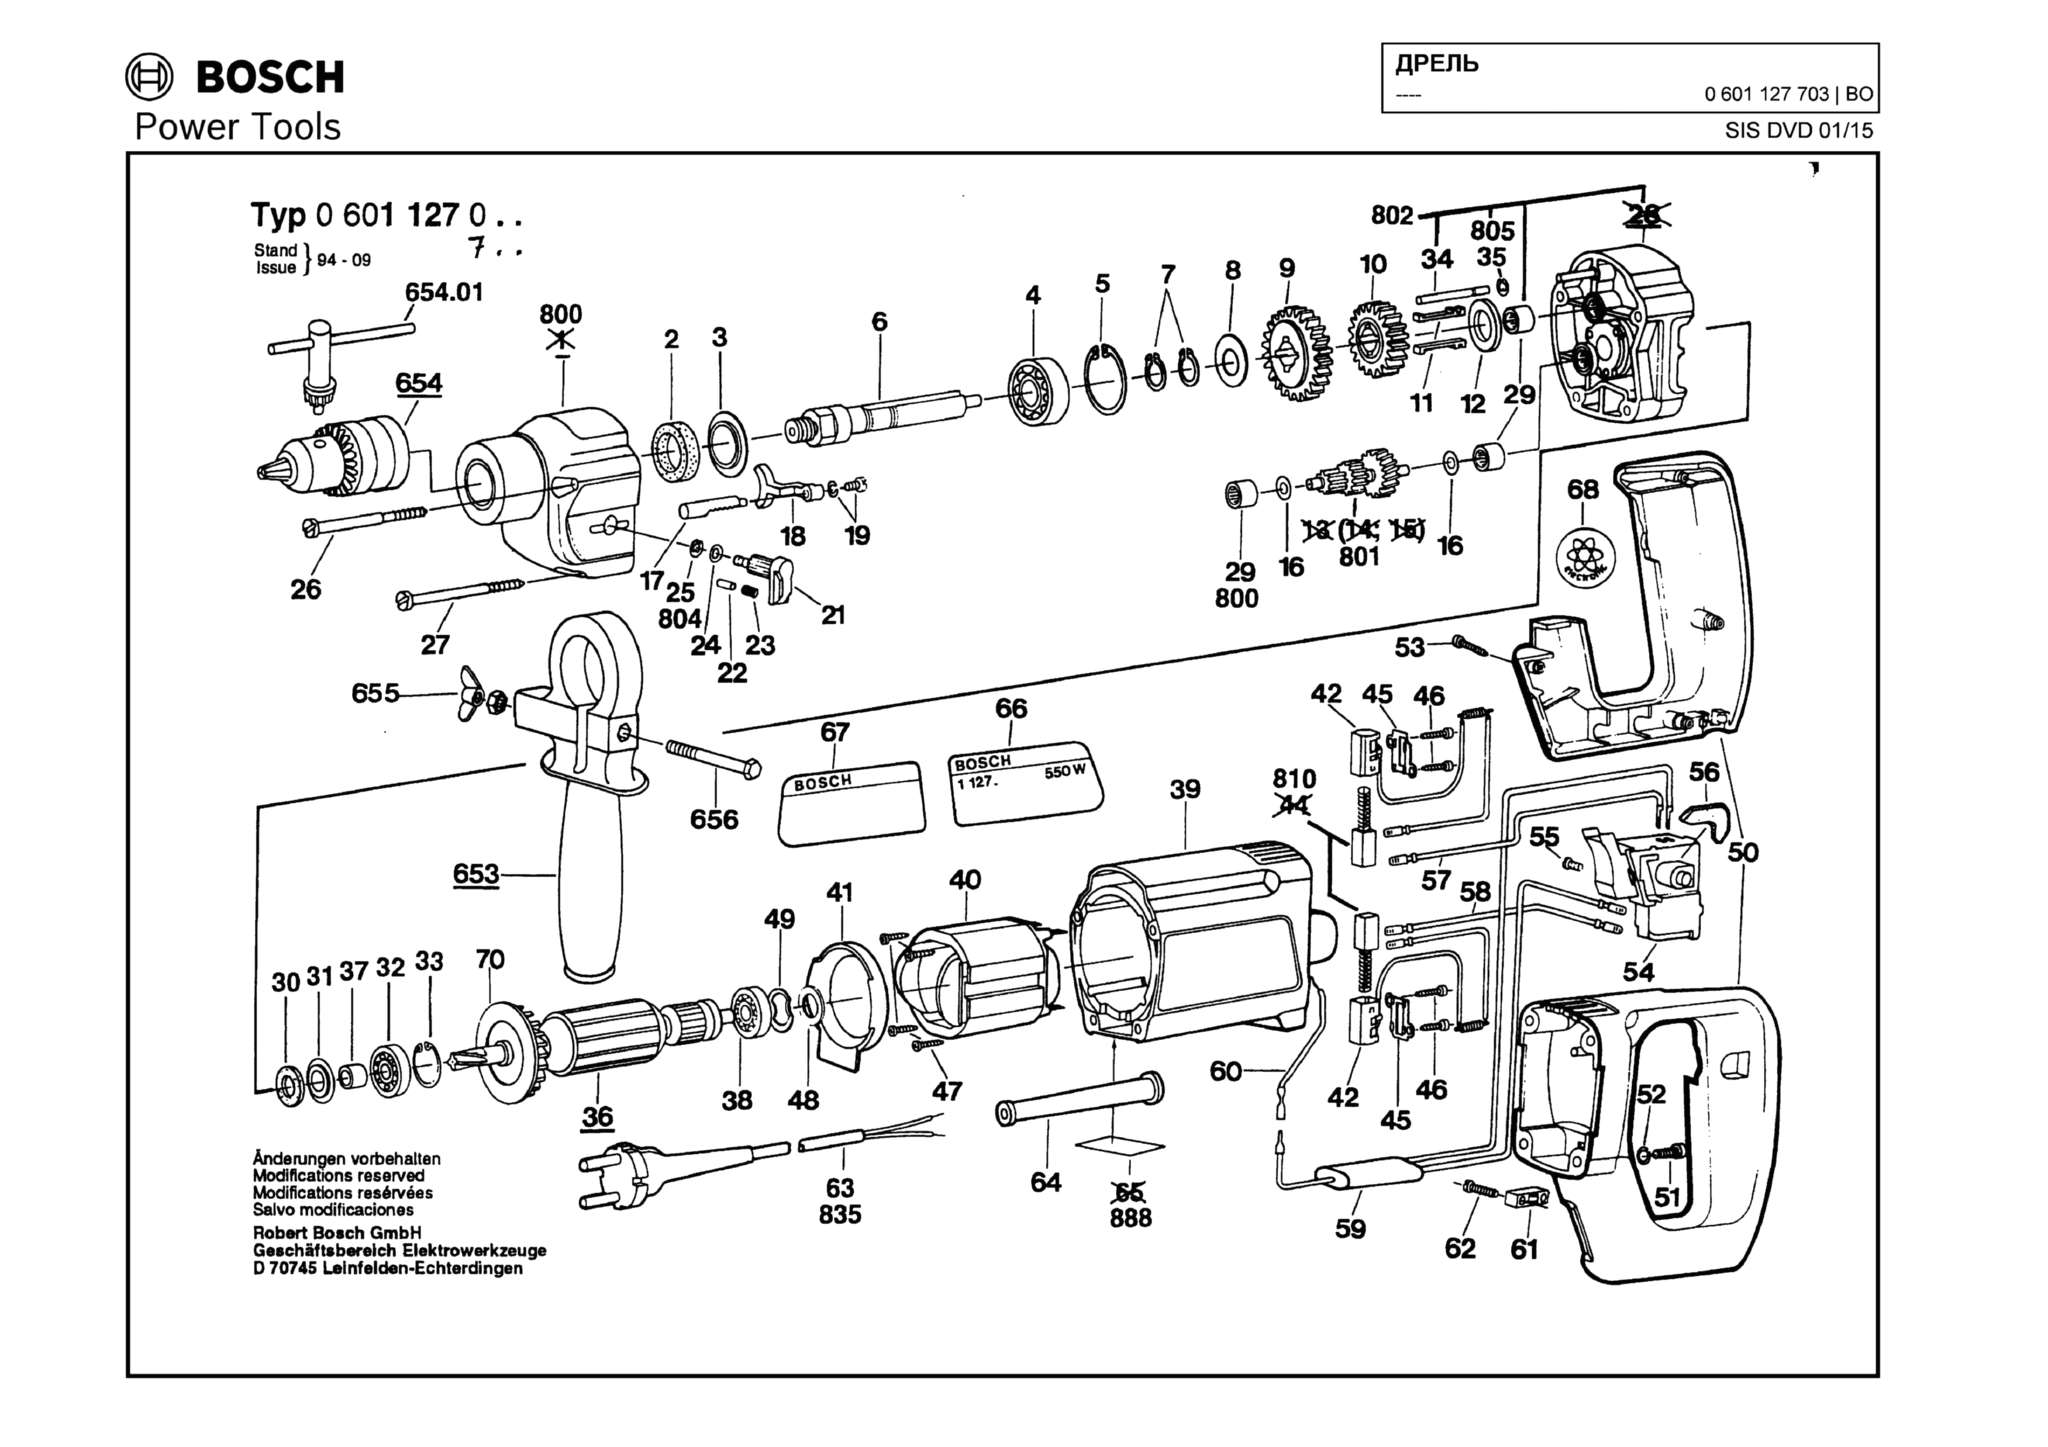 Запчасти, схема и деталировка Bosch (ТИП 0601127703)